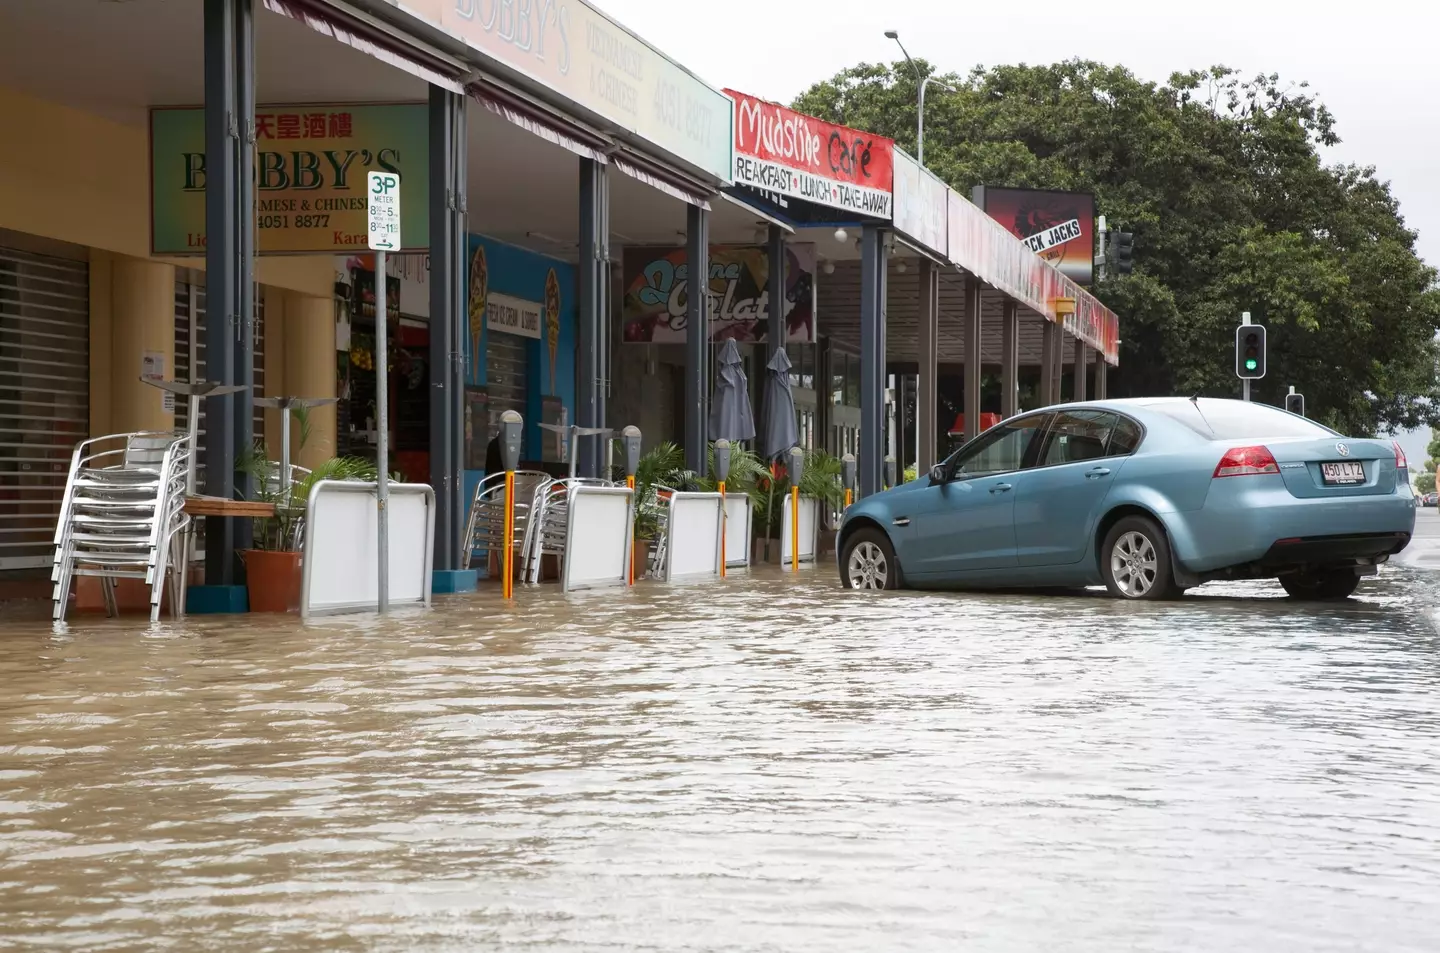 Australia has also experienced extreme flooding.